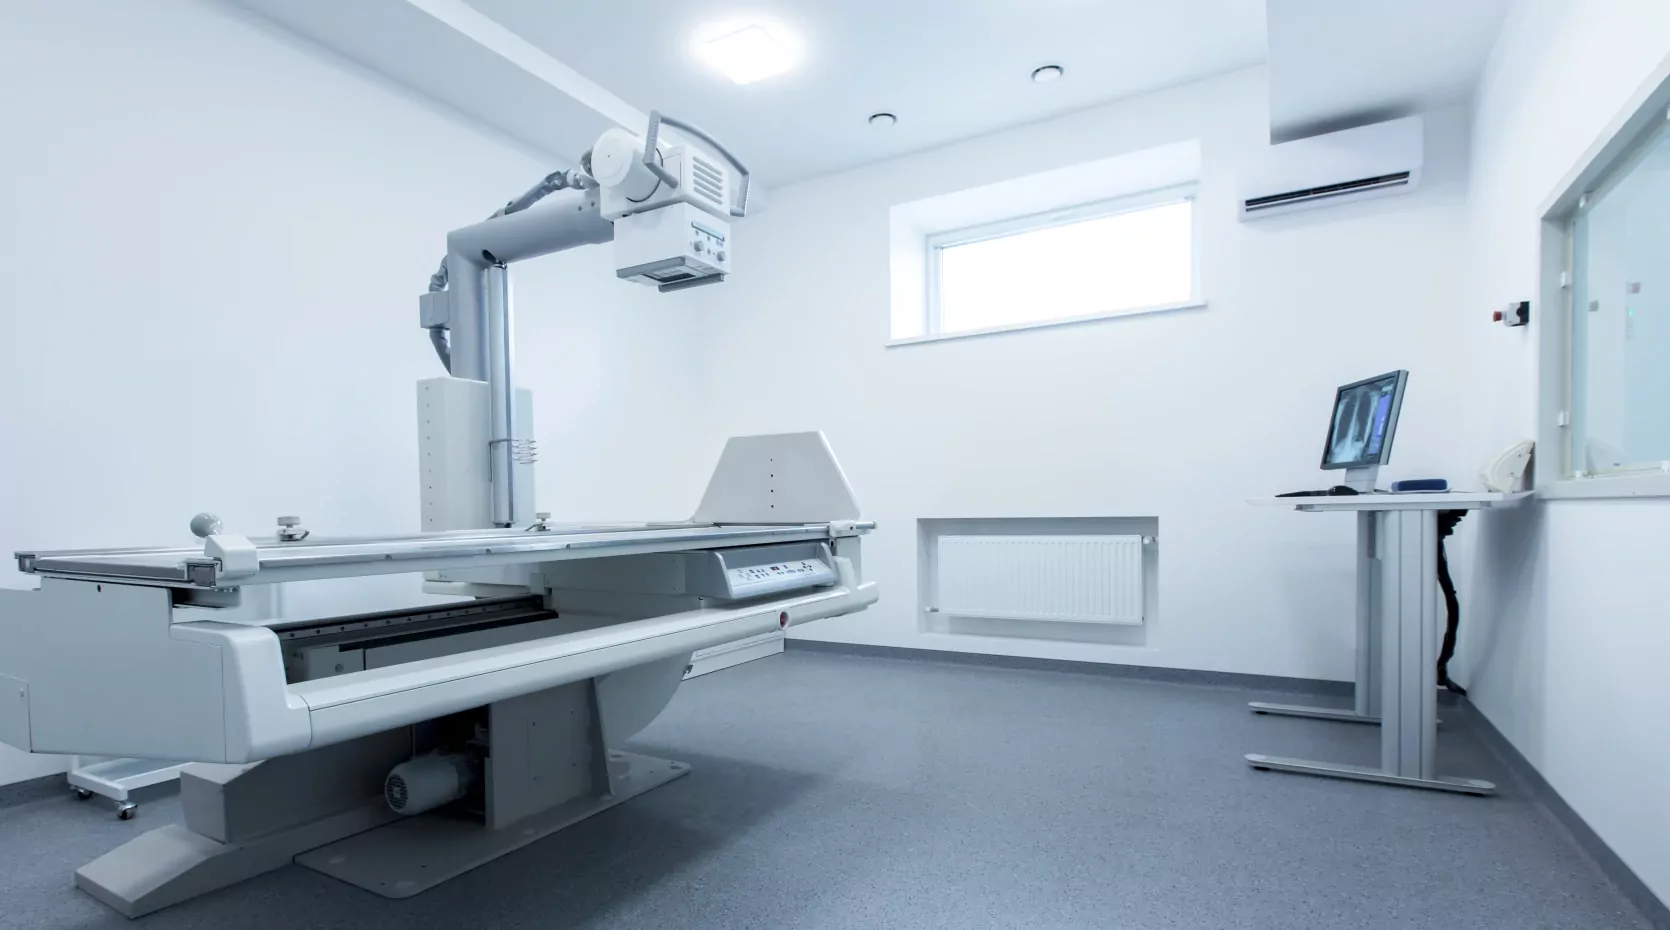 апарат для проведення рентгена попереково-крижового відділу хребта в медичному центрі ОН Клінік Харків